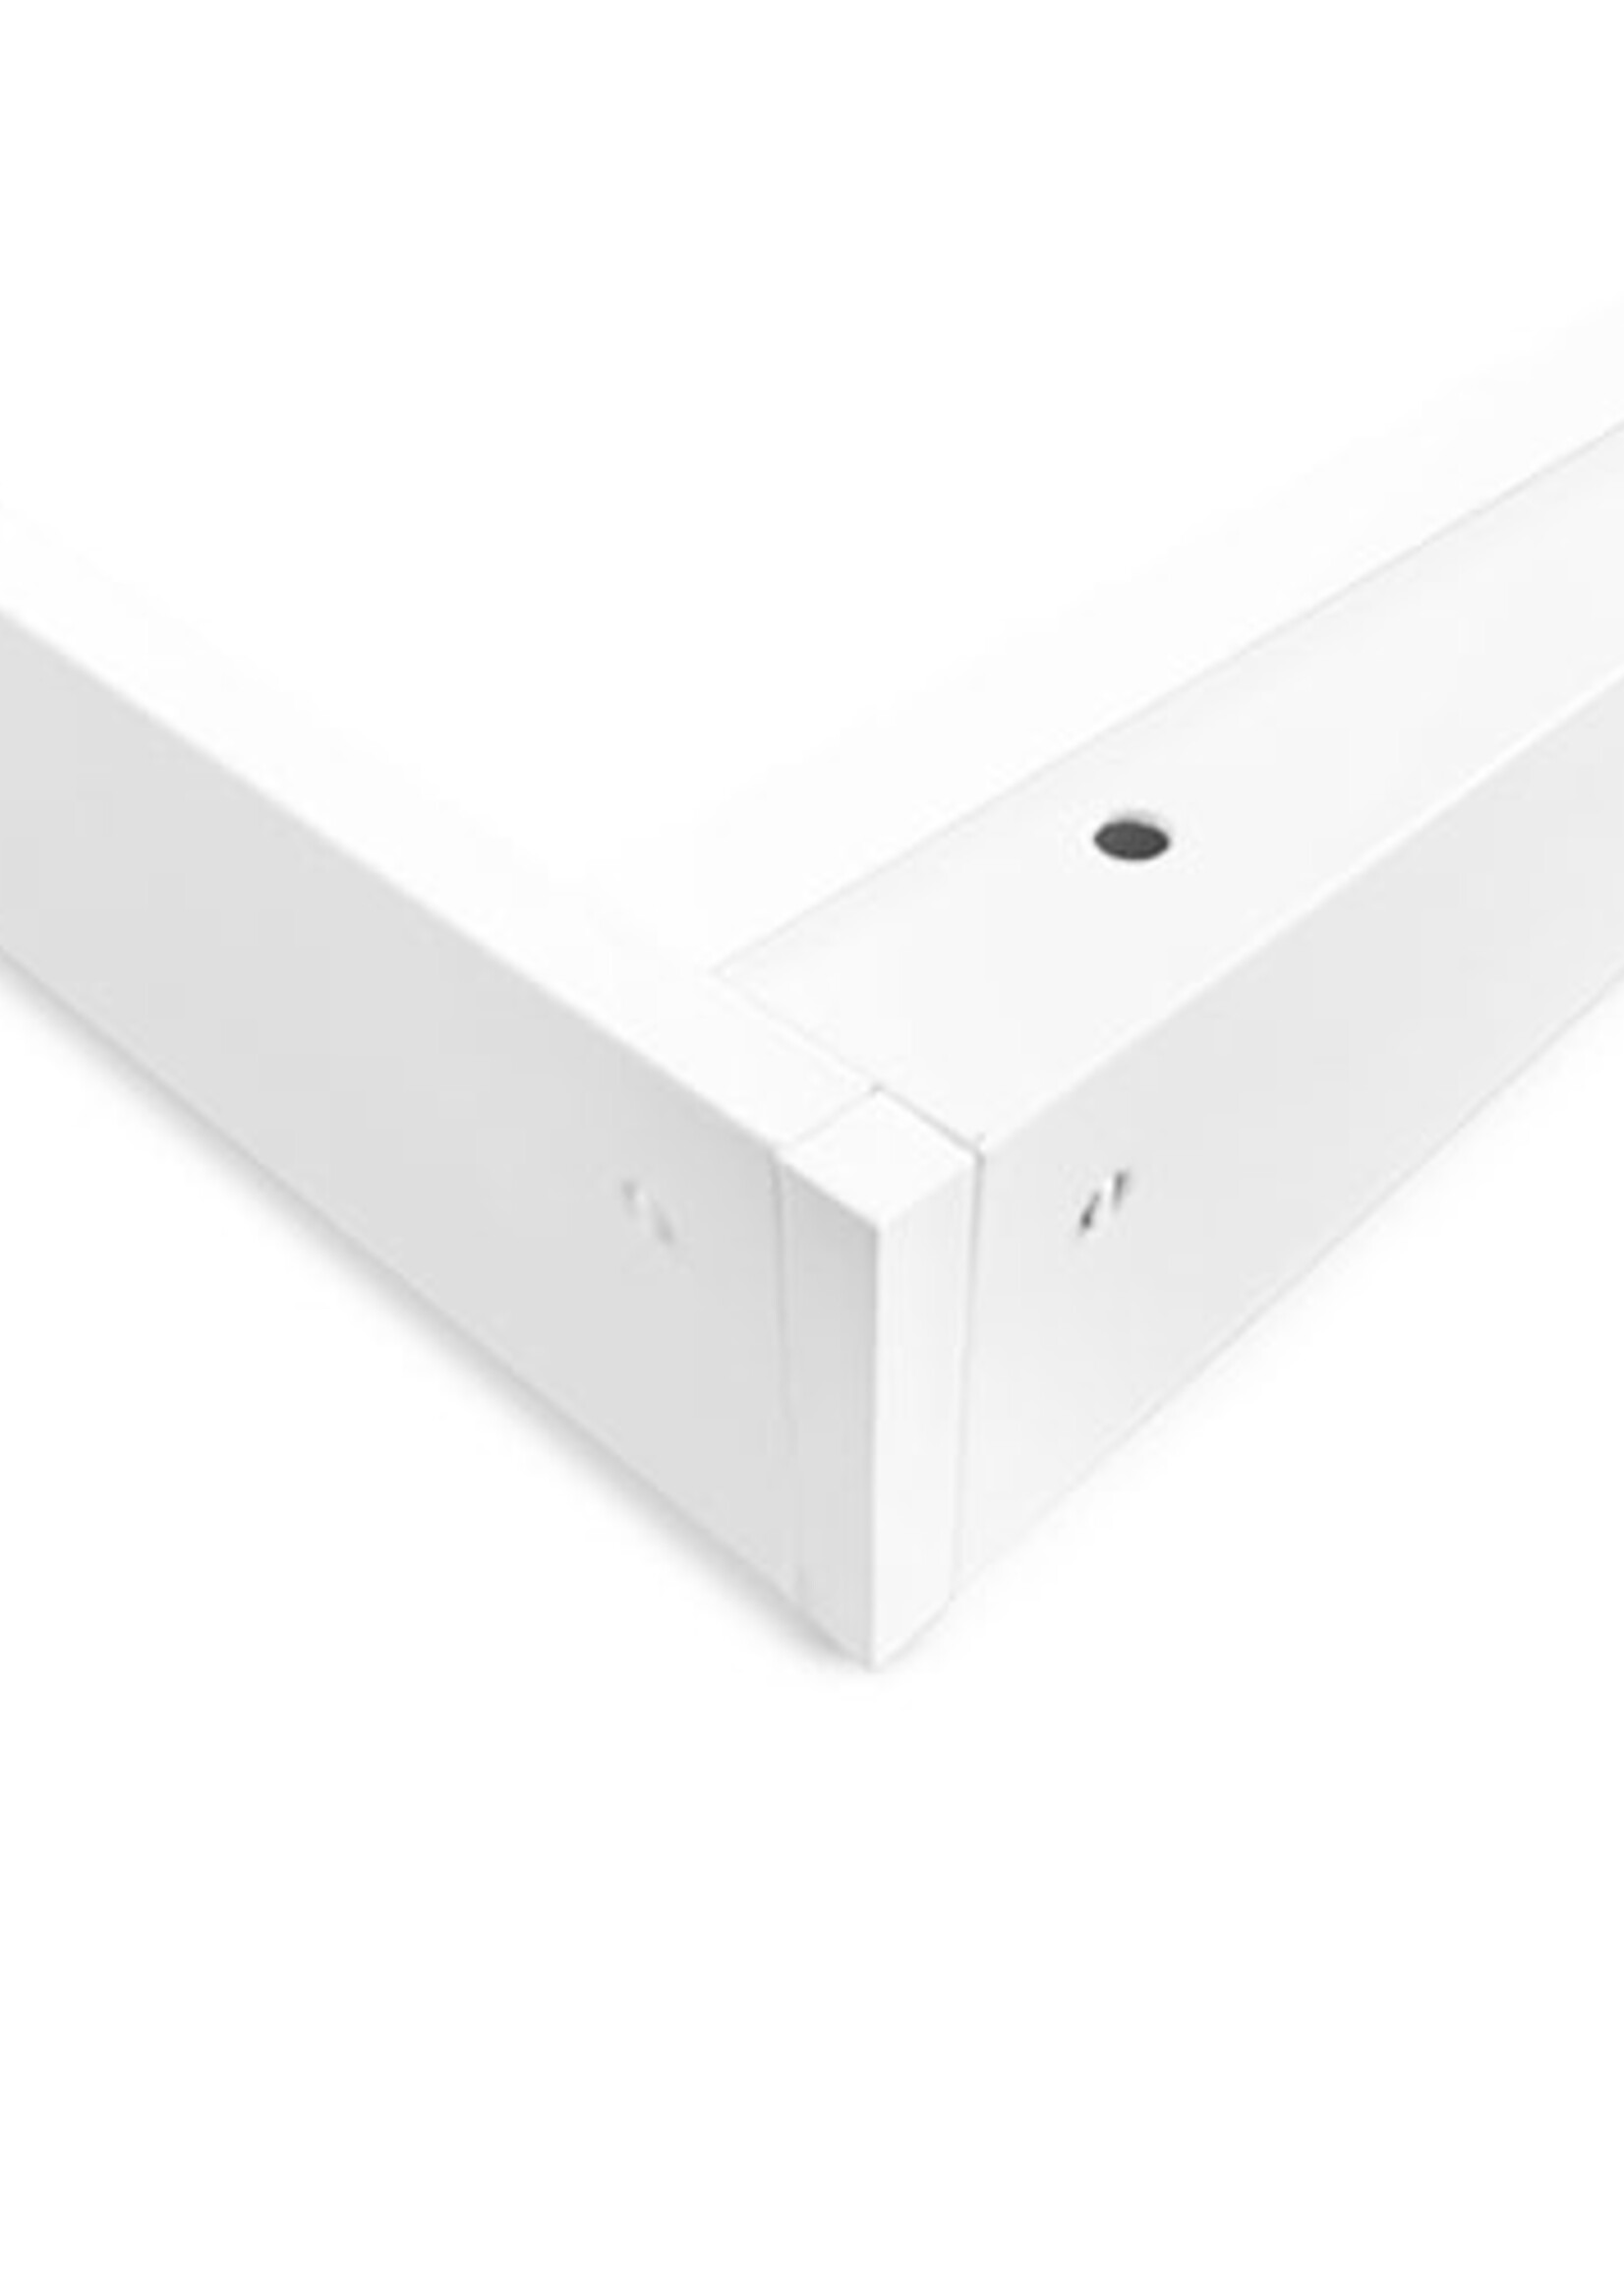 LEDWINKEL-Online LED Paneel opbouw frame 30x30cm wit